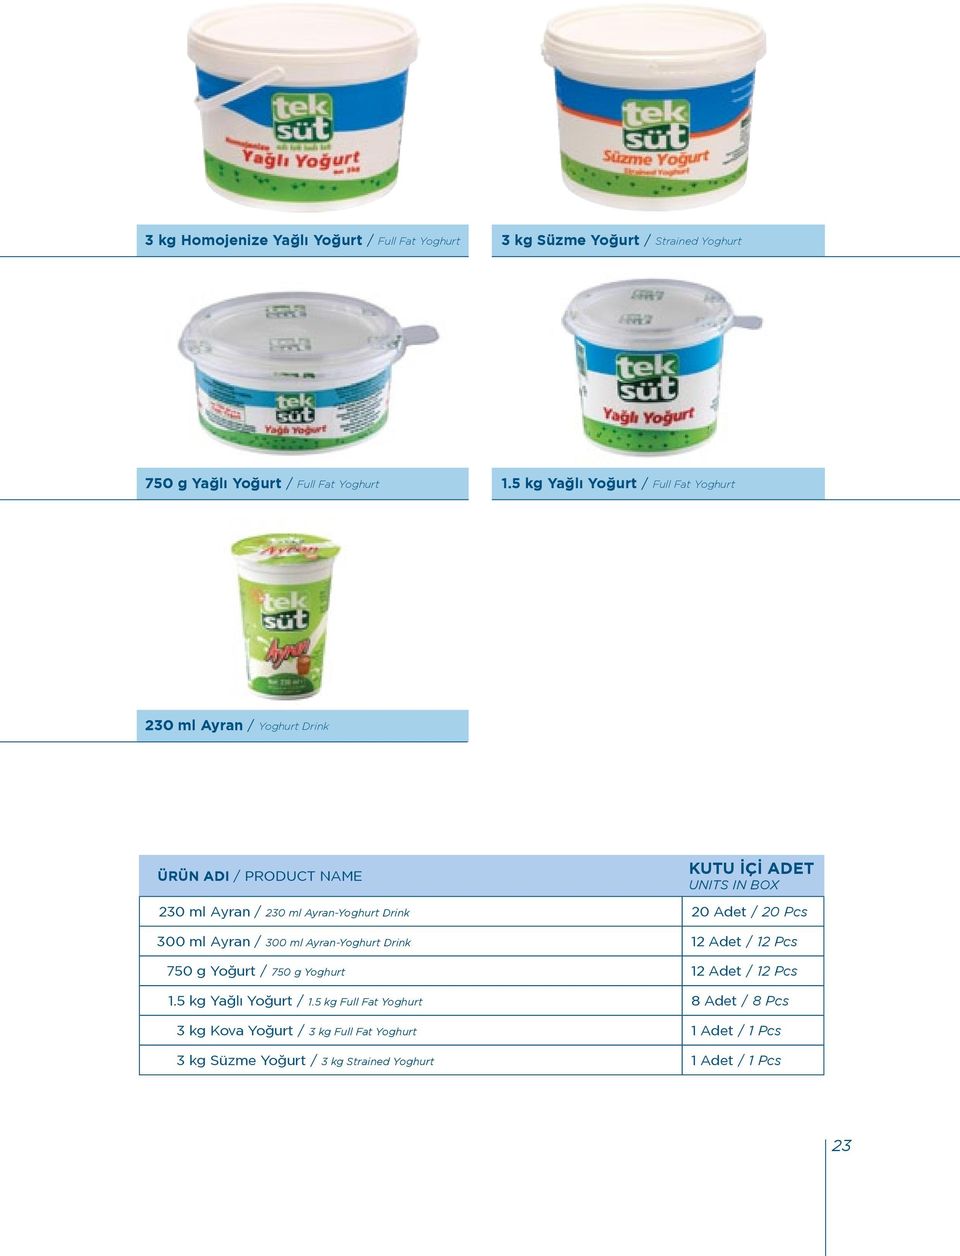 Ayran-Yoghurt Drink 20 Adet / 20 Pcs 300 ml Ayran / 300 ml Ayran-Yoghurt Drink 12 Adet / 12 Pcs 750 g Yoğurt / 750 g Yoghurt 12 Adet / 12 Pcs 1.